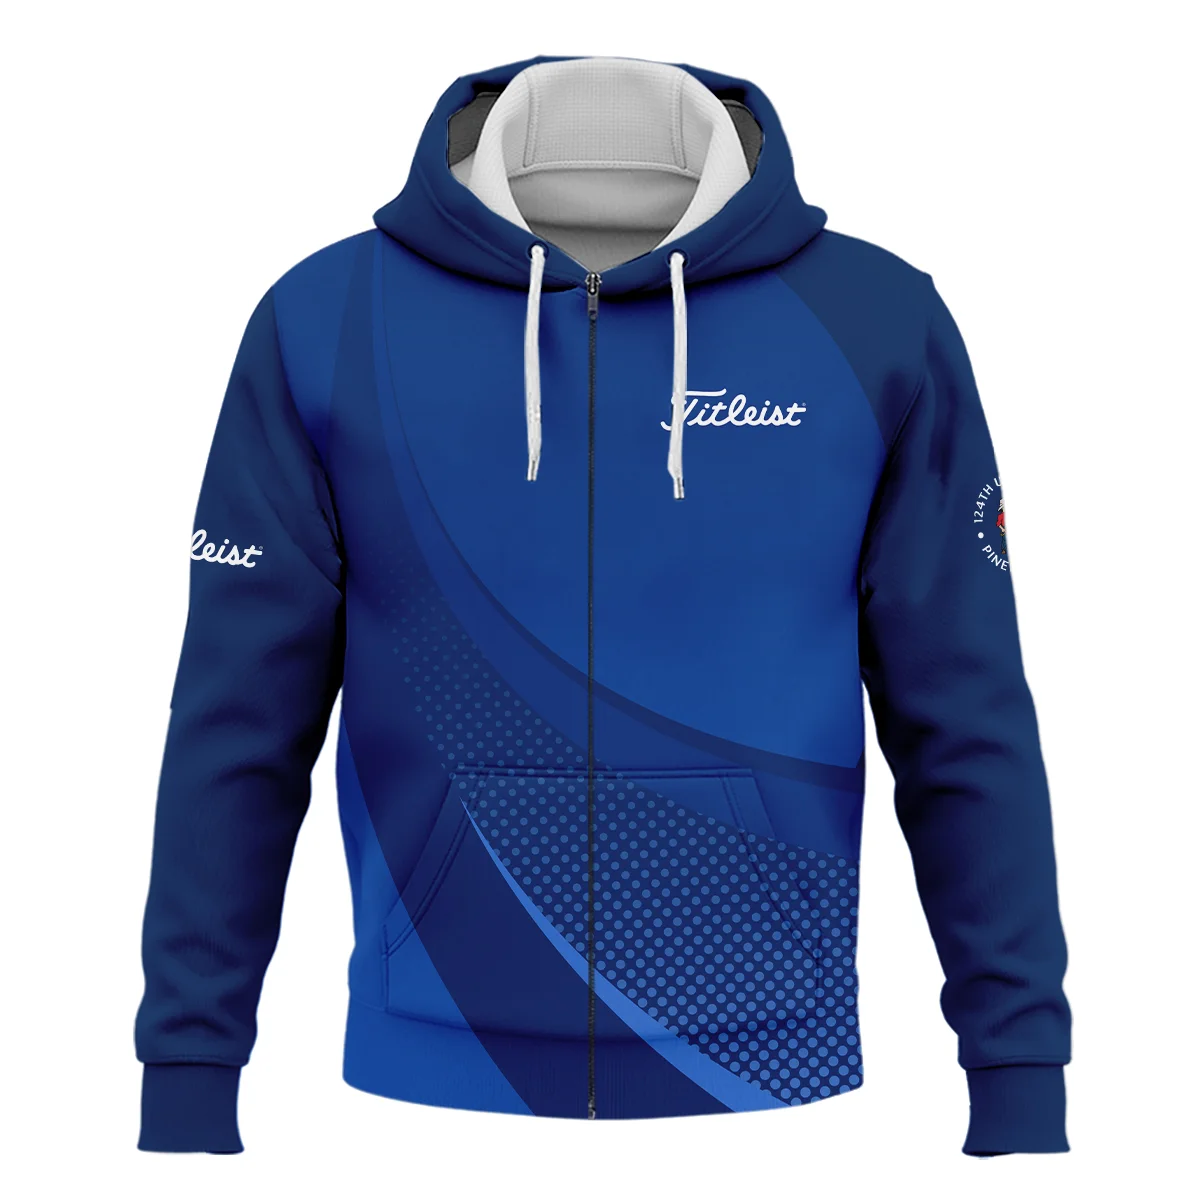 Titleist 124th U.S. Open Pinehurst Golf Sport Zipper Hoodie Shirt Dark Blue Gradient Halftone Pattern All Over Print Zipper Hoodie Shirt